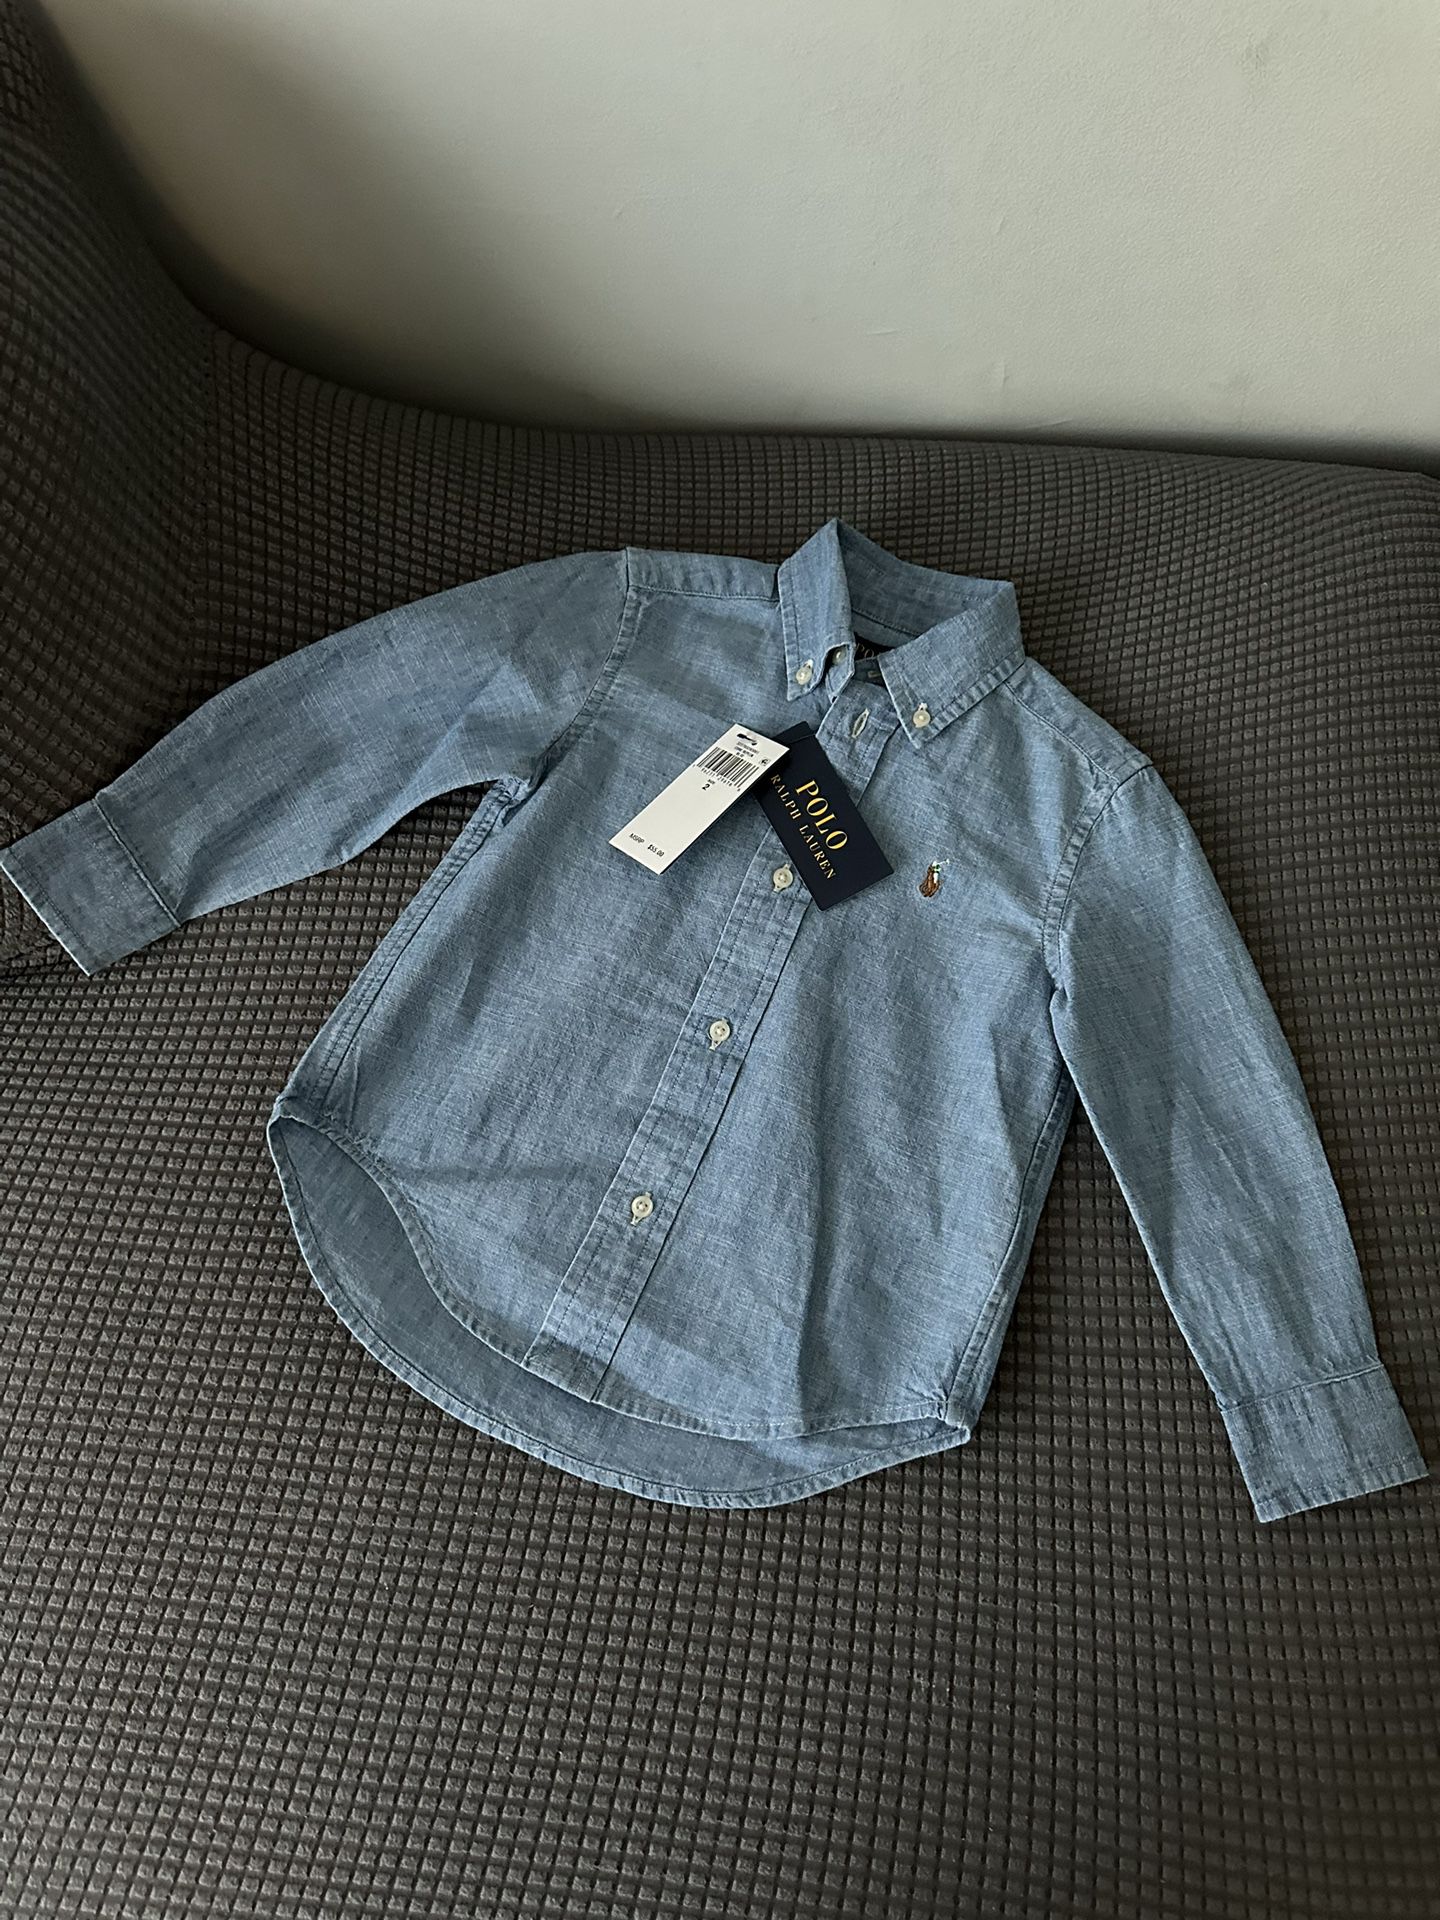 Toddler Polo Ralph Lauren Shirt Size 2T